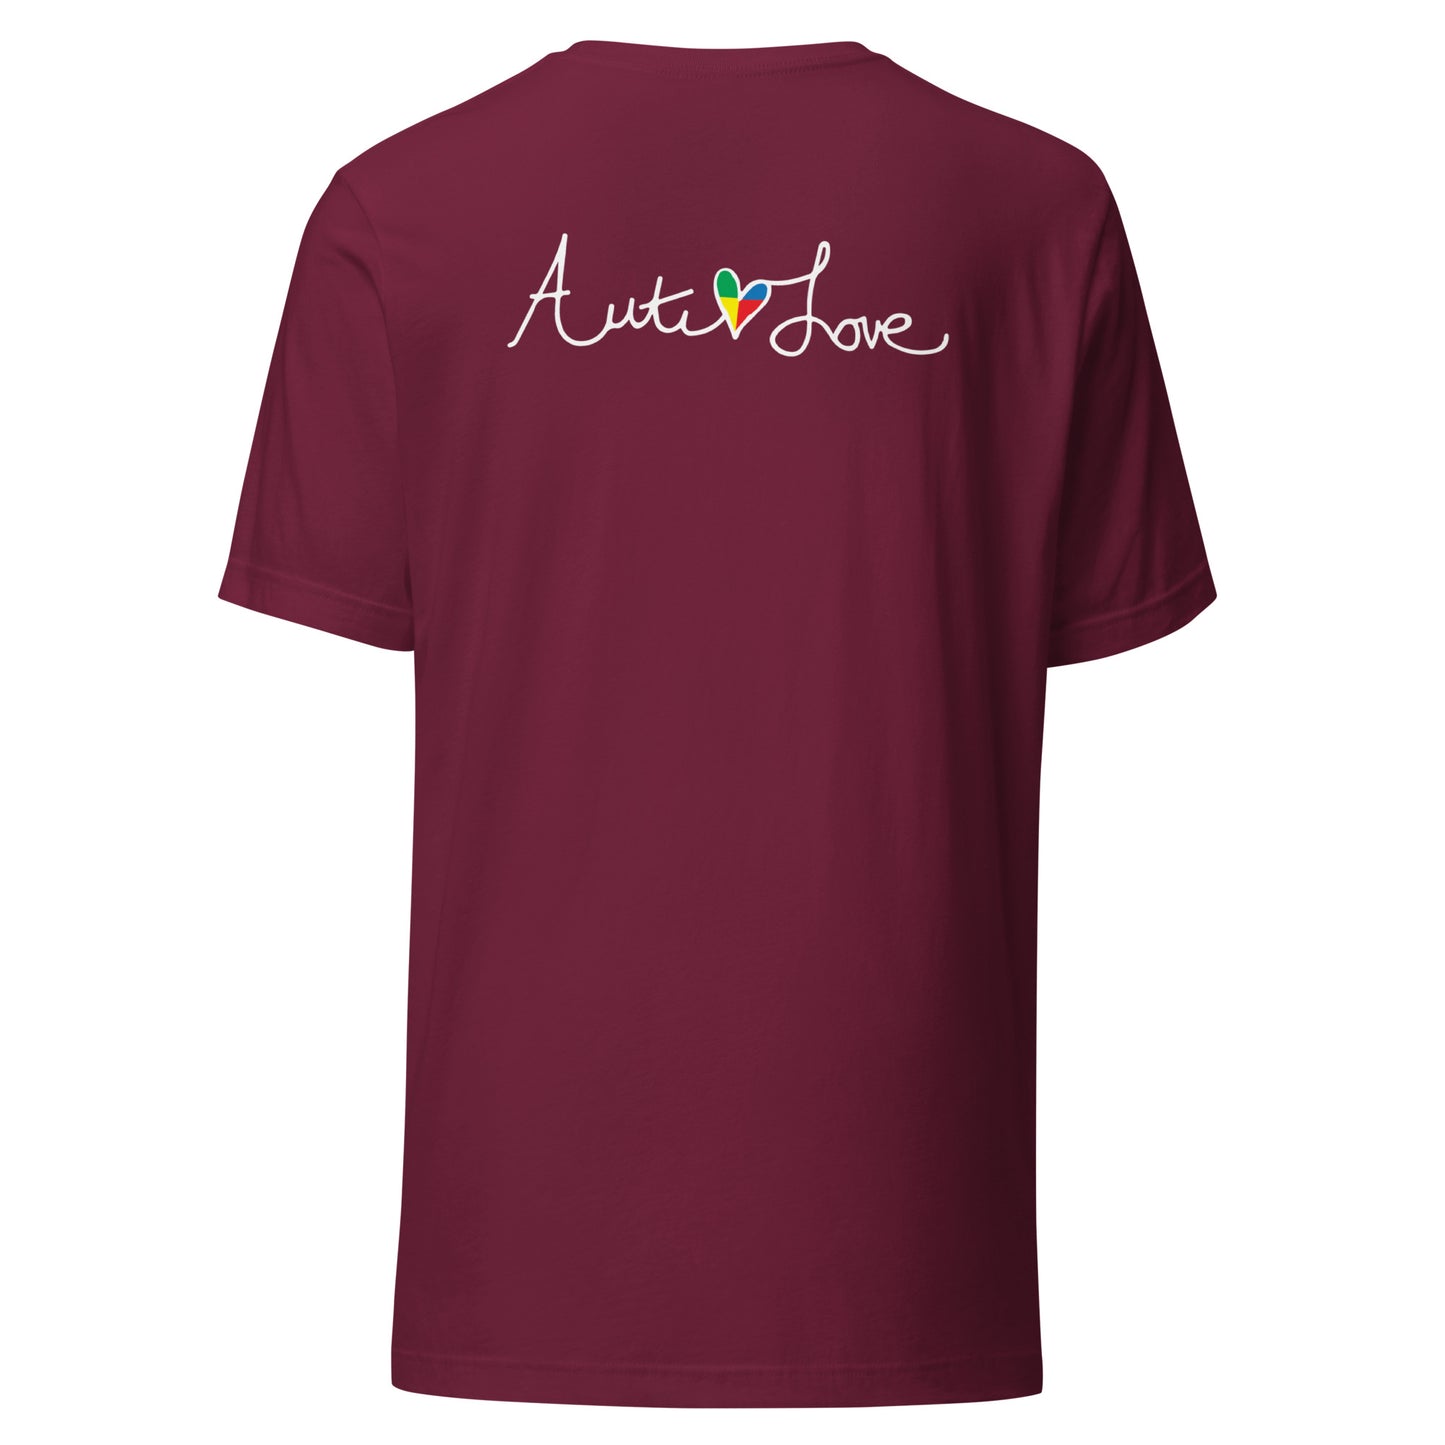 Cross Front Autilove Back T-shirt